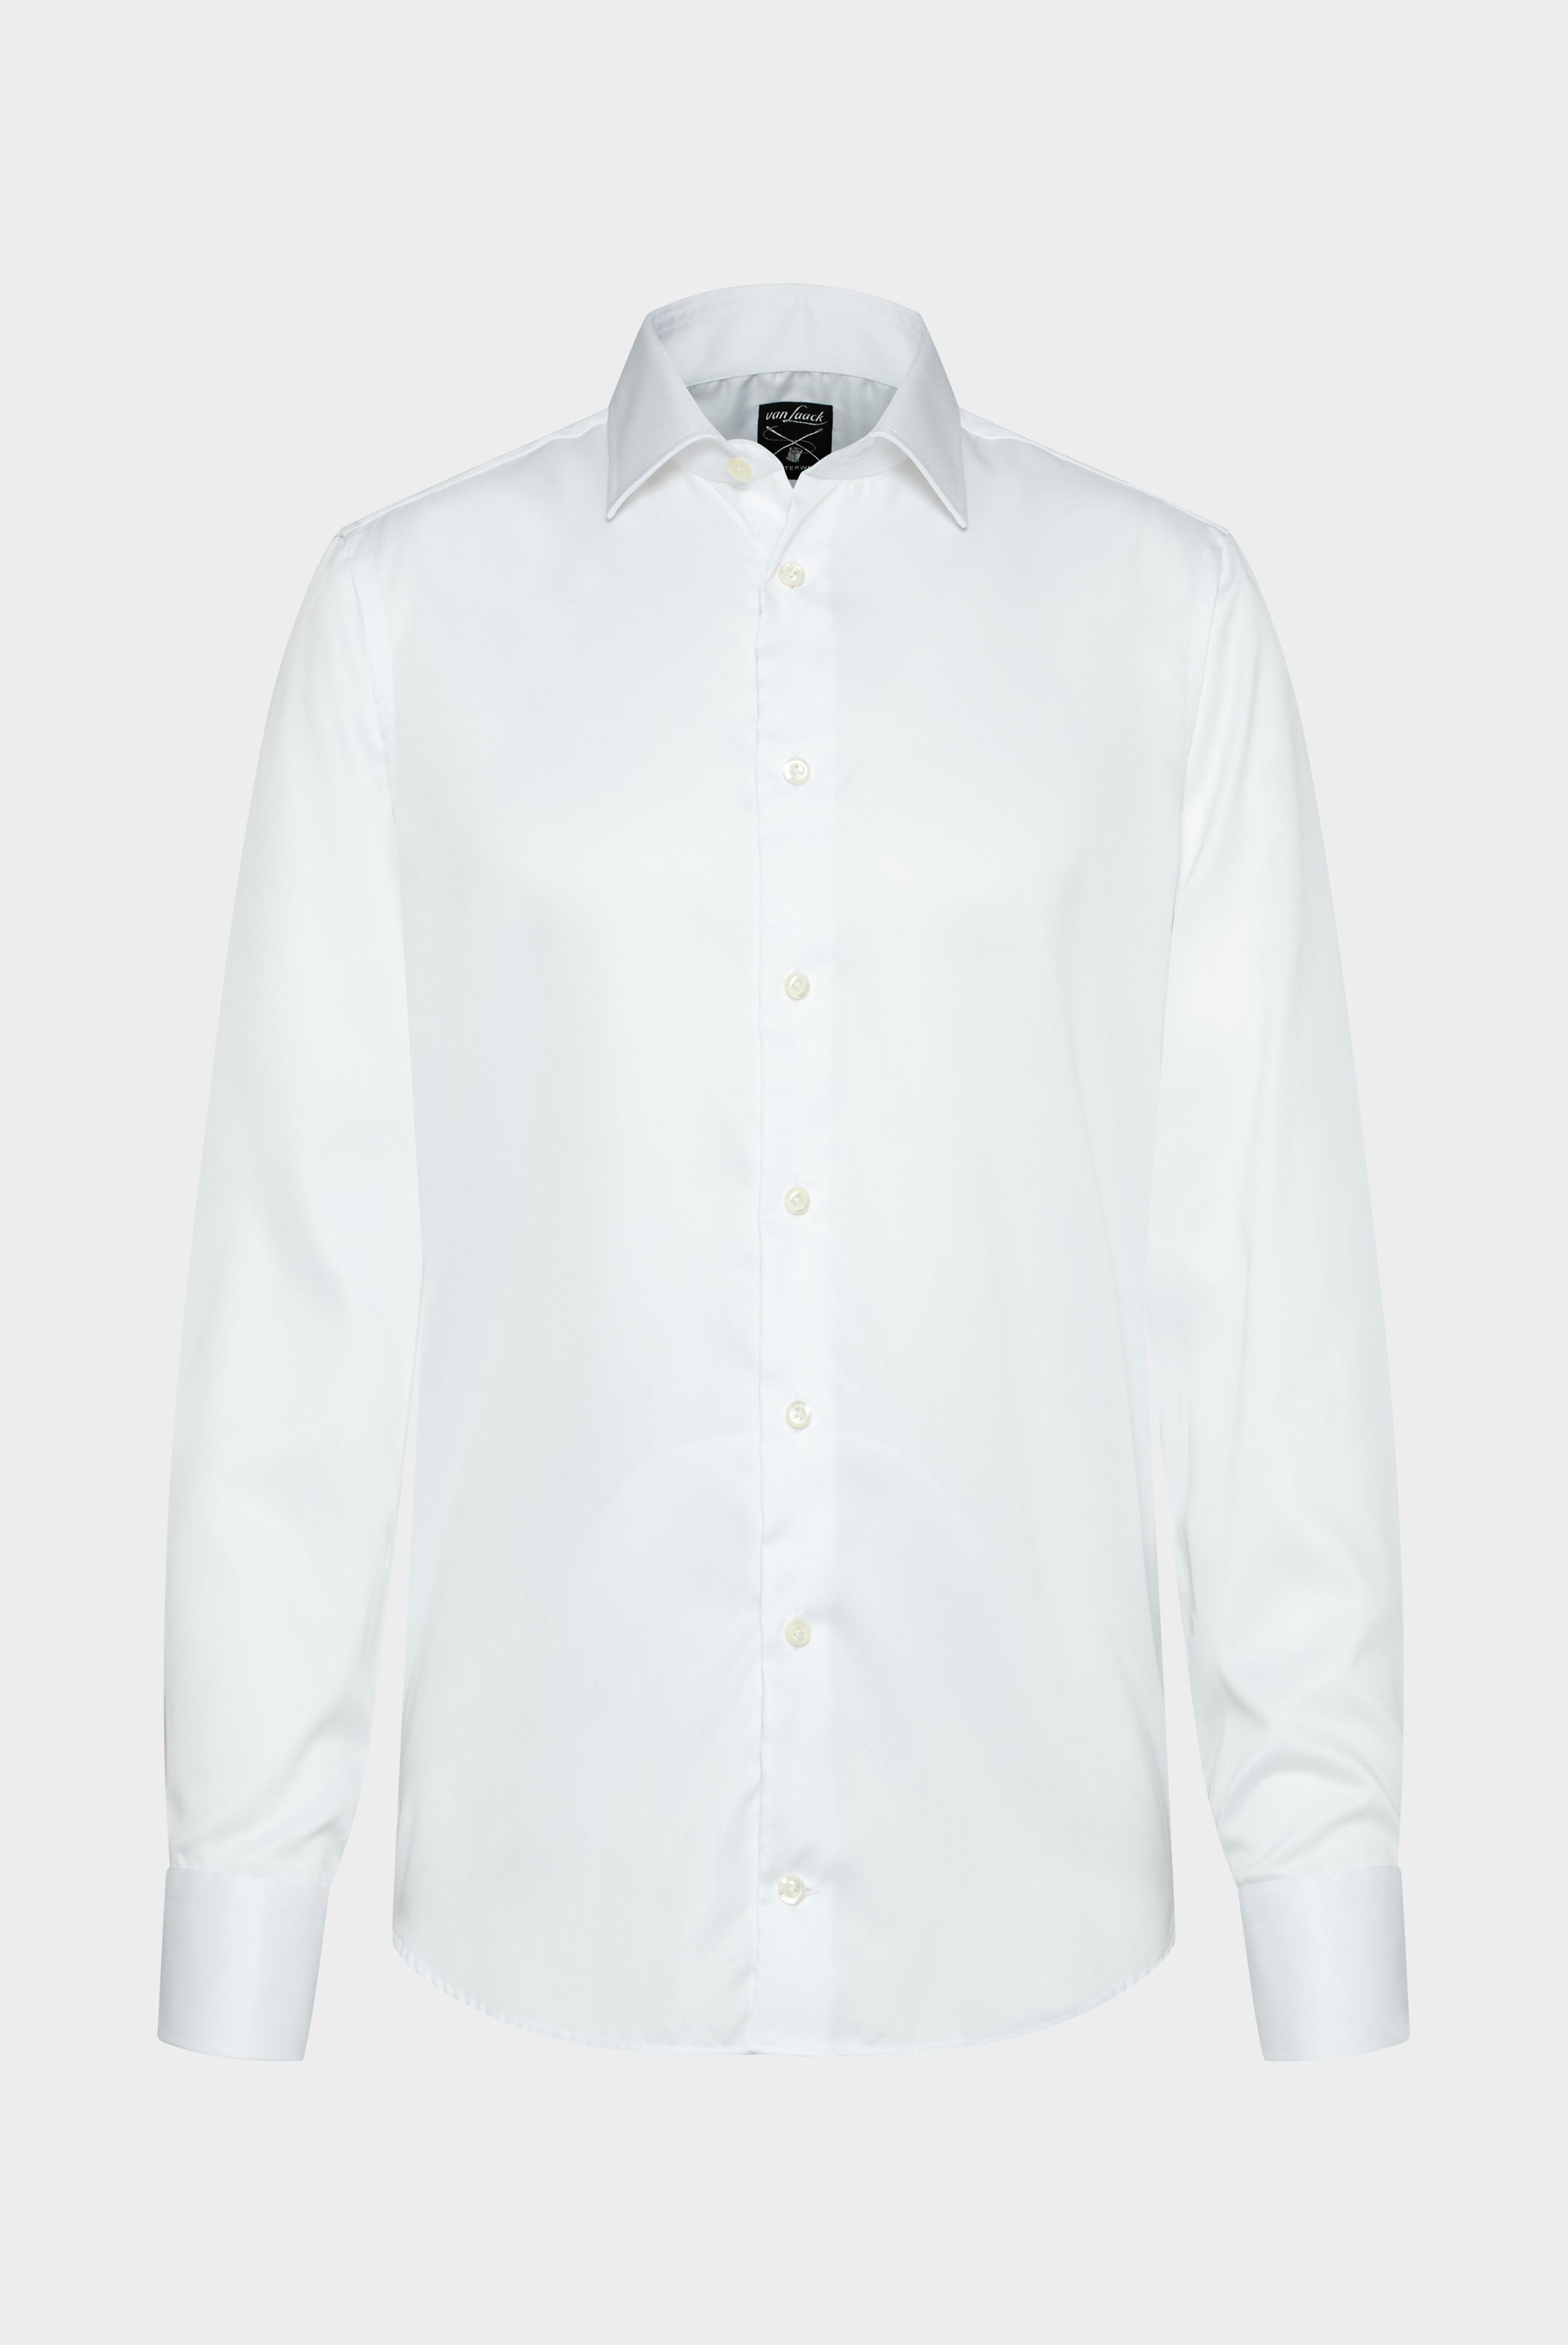 Bügelleichte Hemden+Bügelfreies Twill Hemd Tailor Fit+20.2011.BQ.132241.000.39